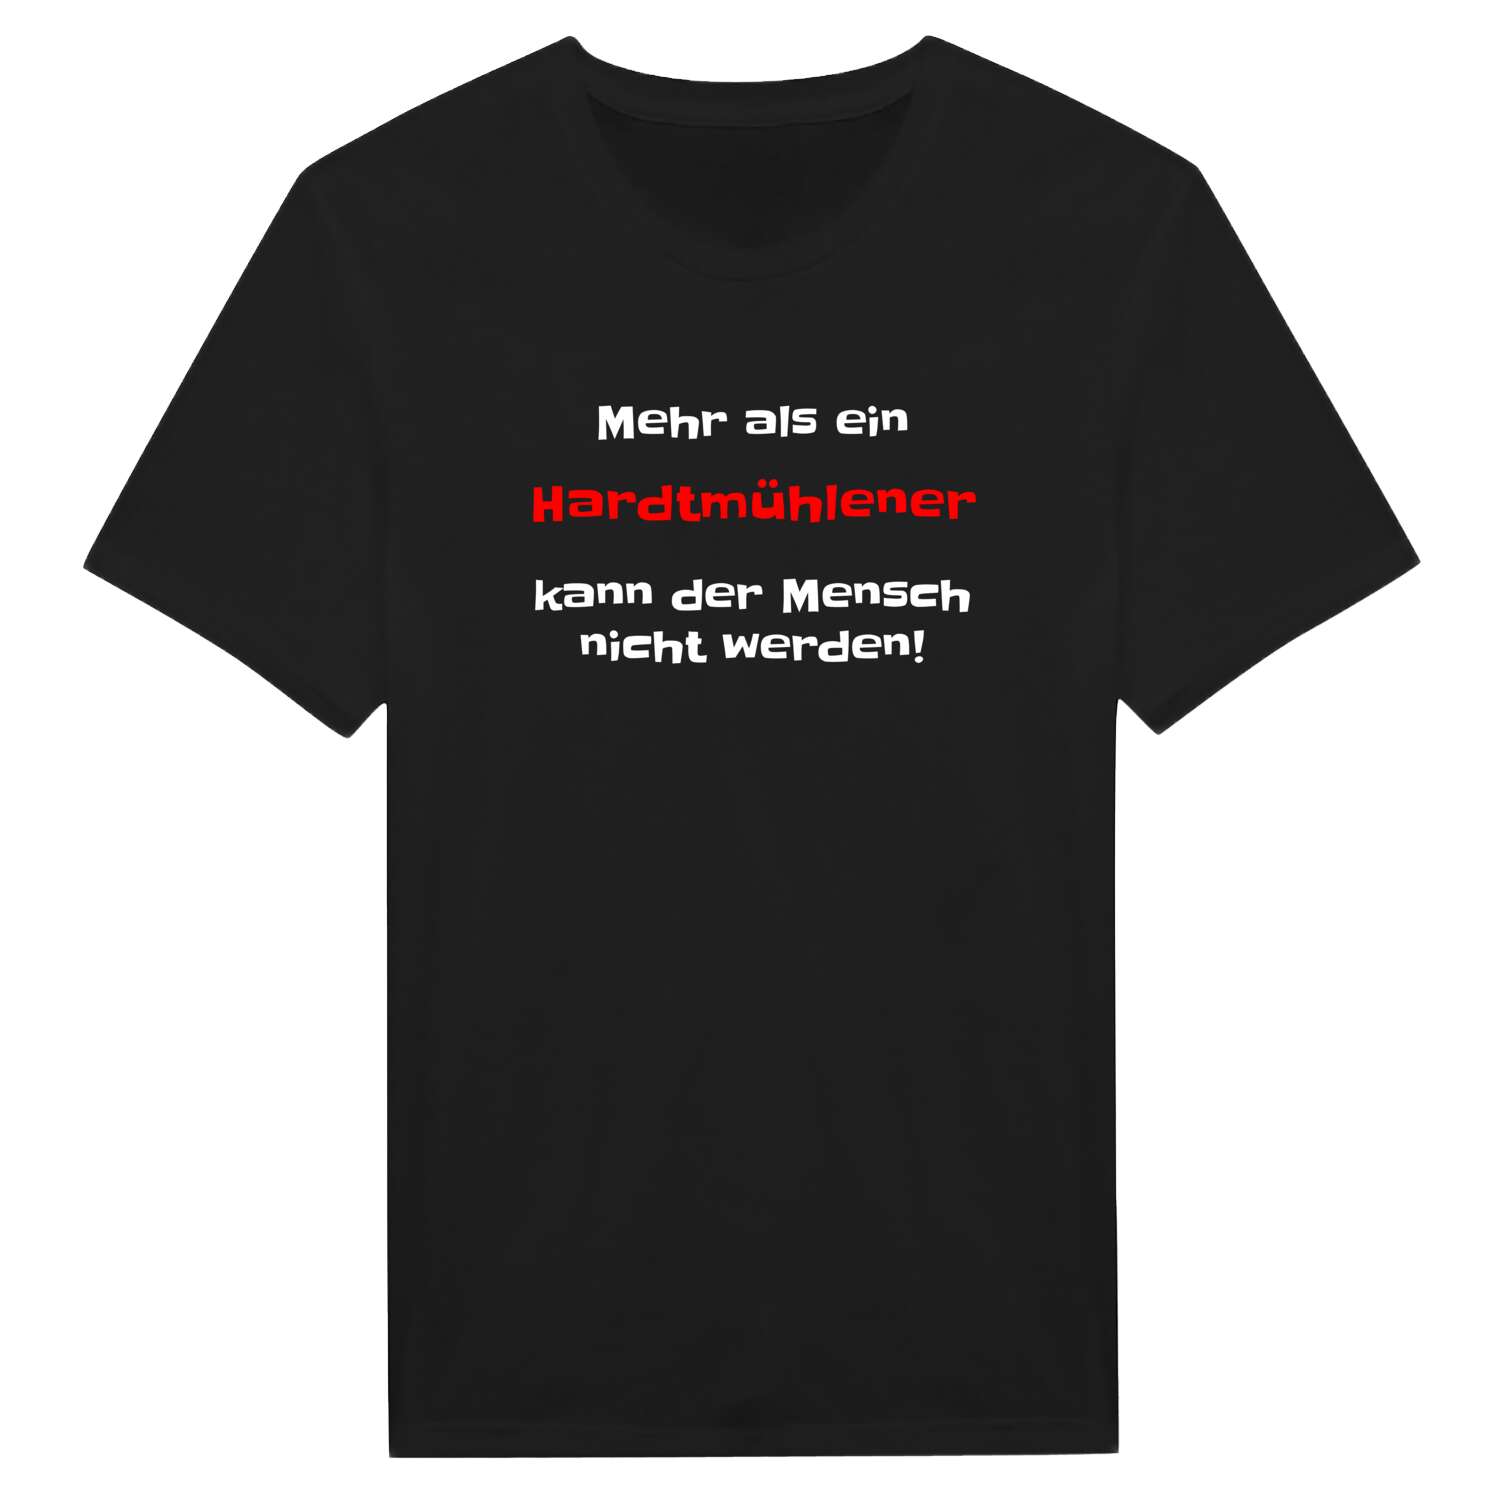 Hardtmühle T-Shirt »Mehr als ein«